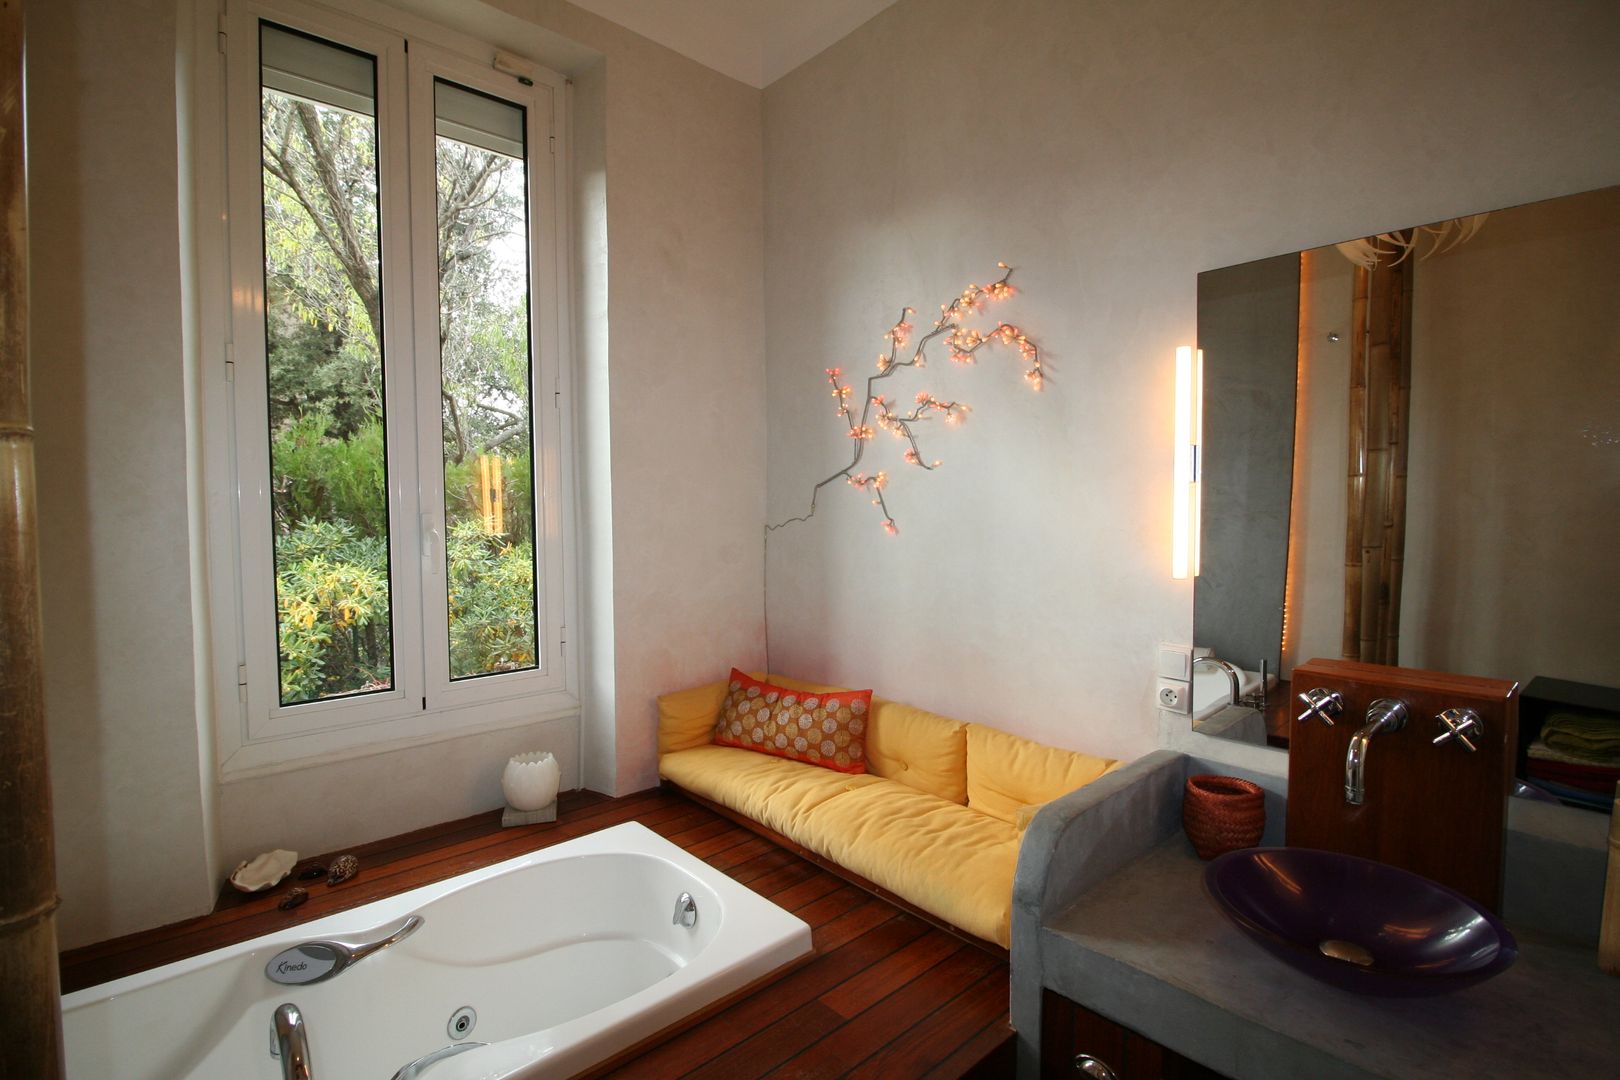 Salle de bain avec vue sur la verdure, LM Interieur Design LM Interieur Design Baños de estilo asiático